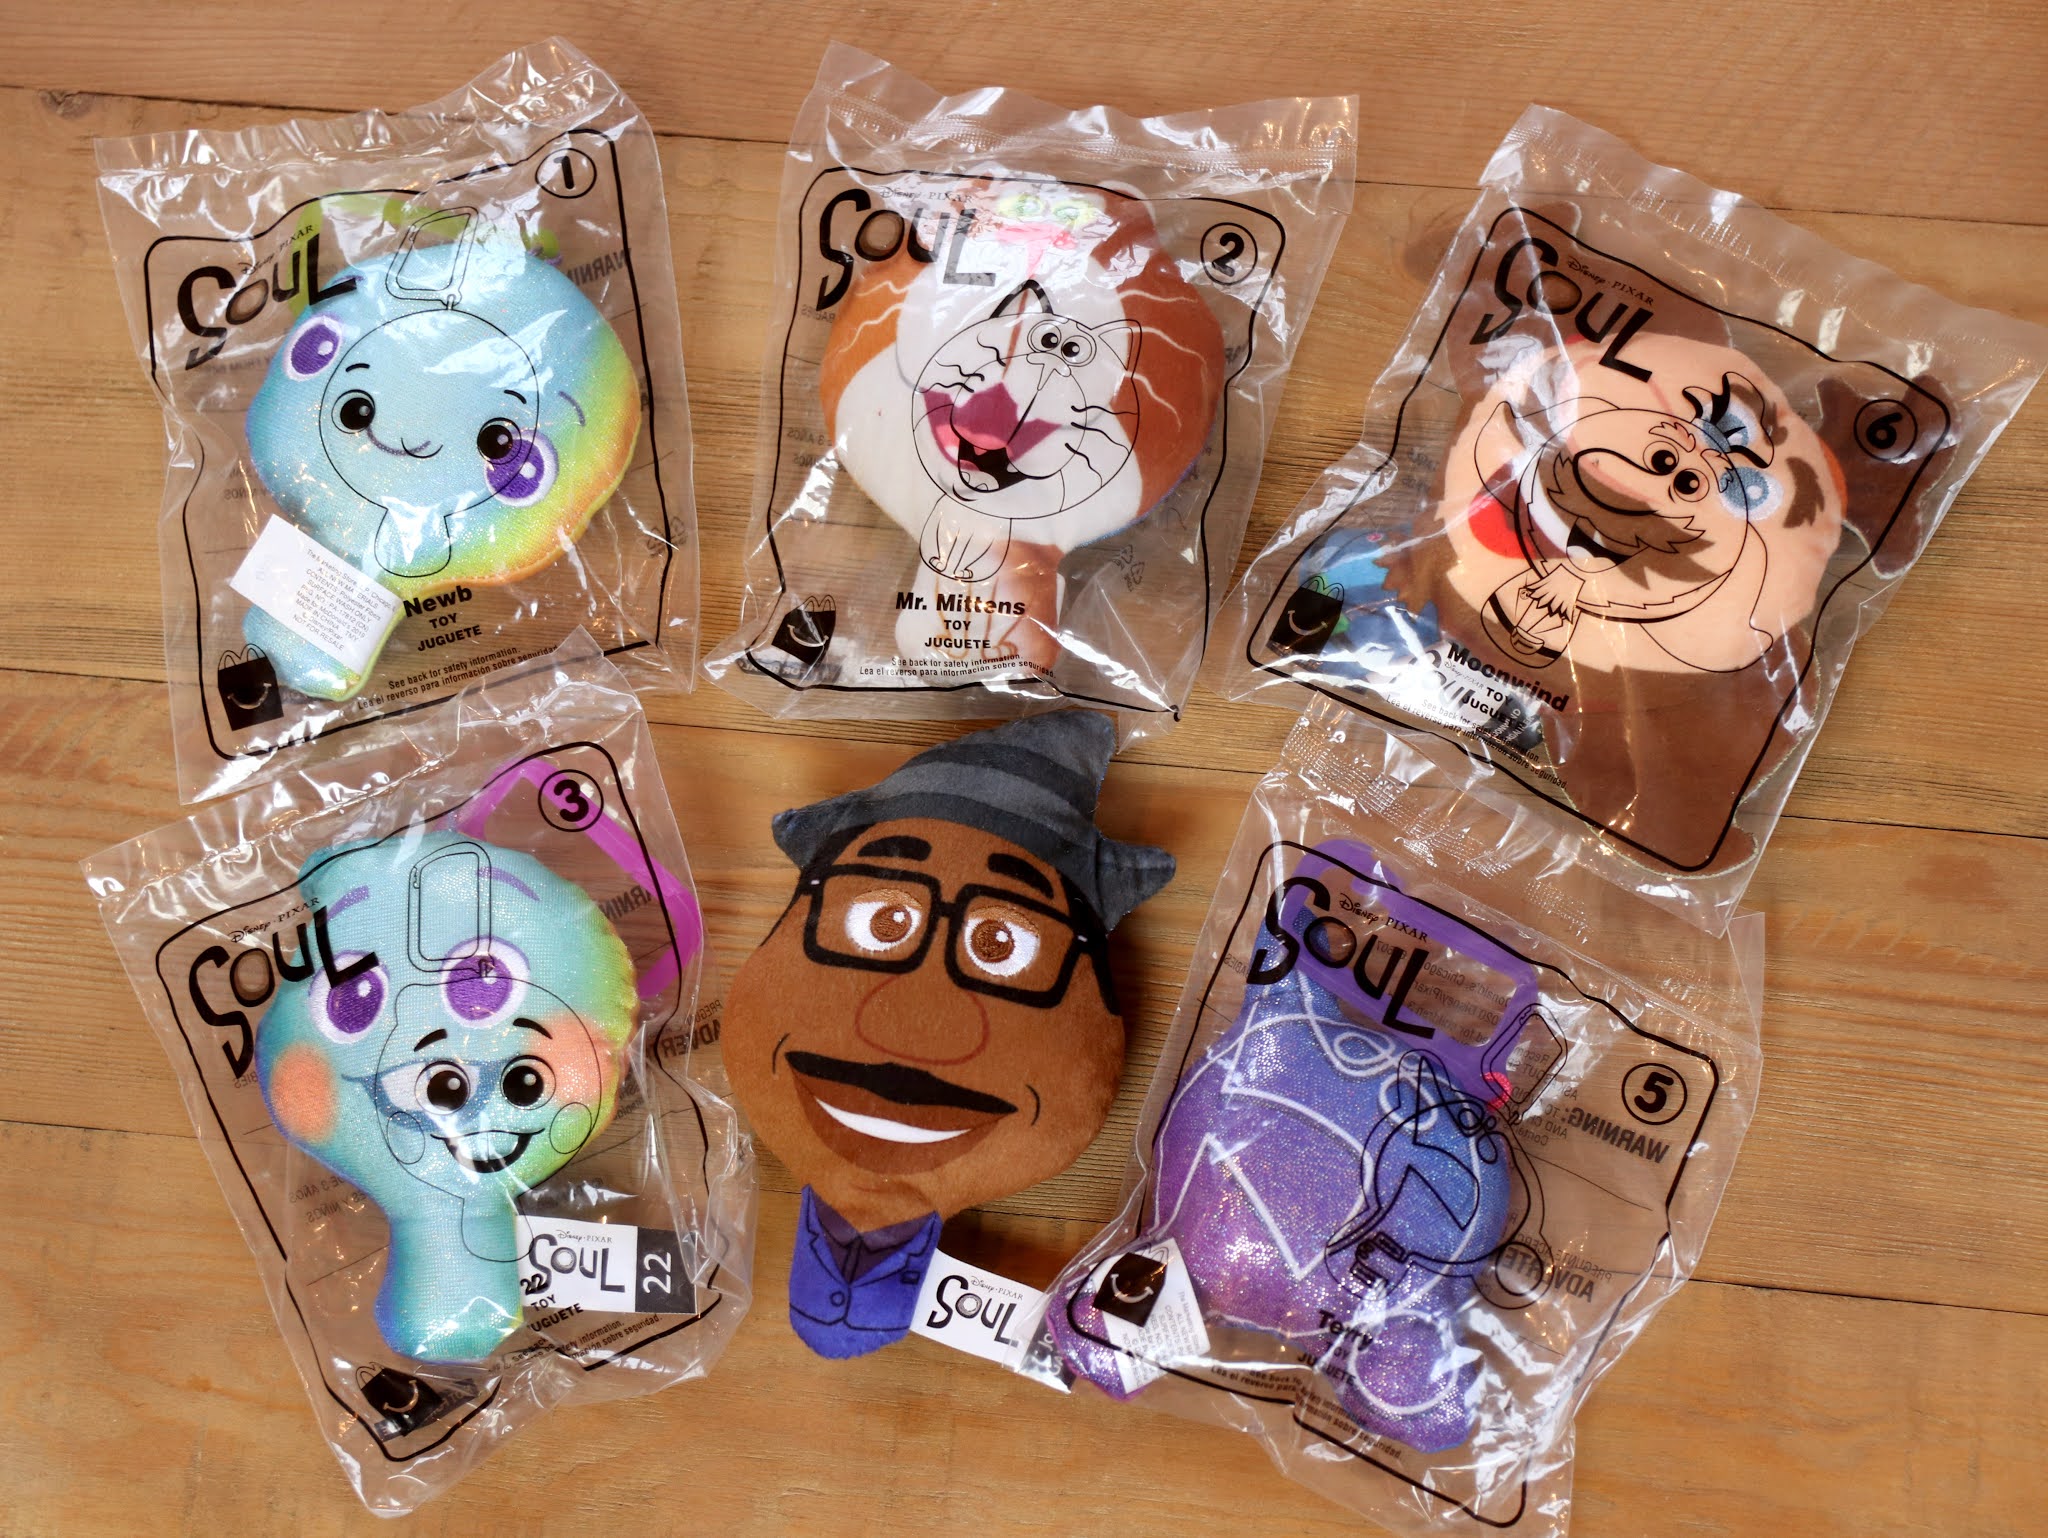 2020 McDonald's Happy Meal Toys #1 Newb Disney Pixar SOUL McDonalds Toy 